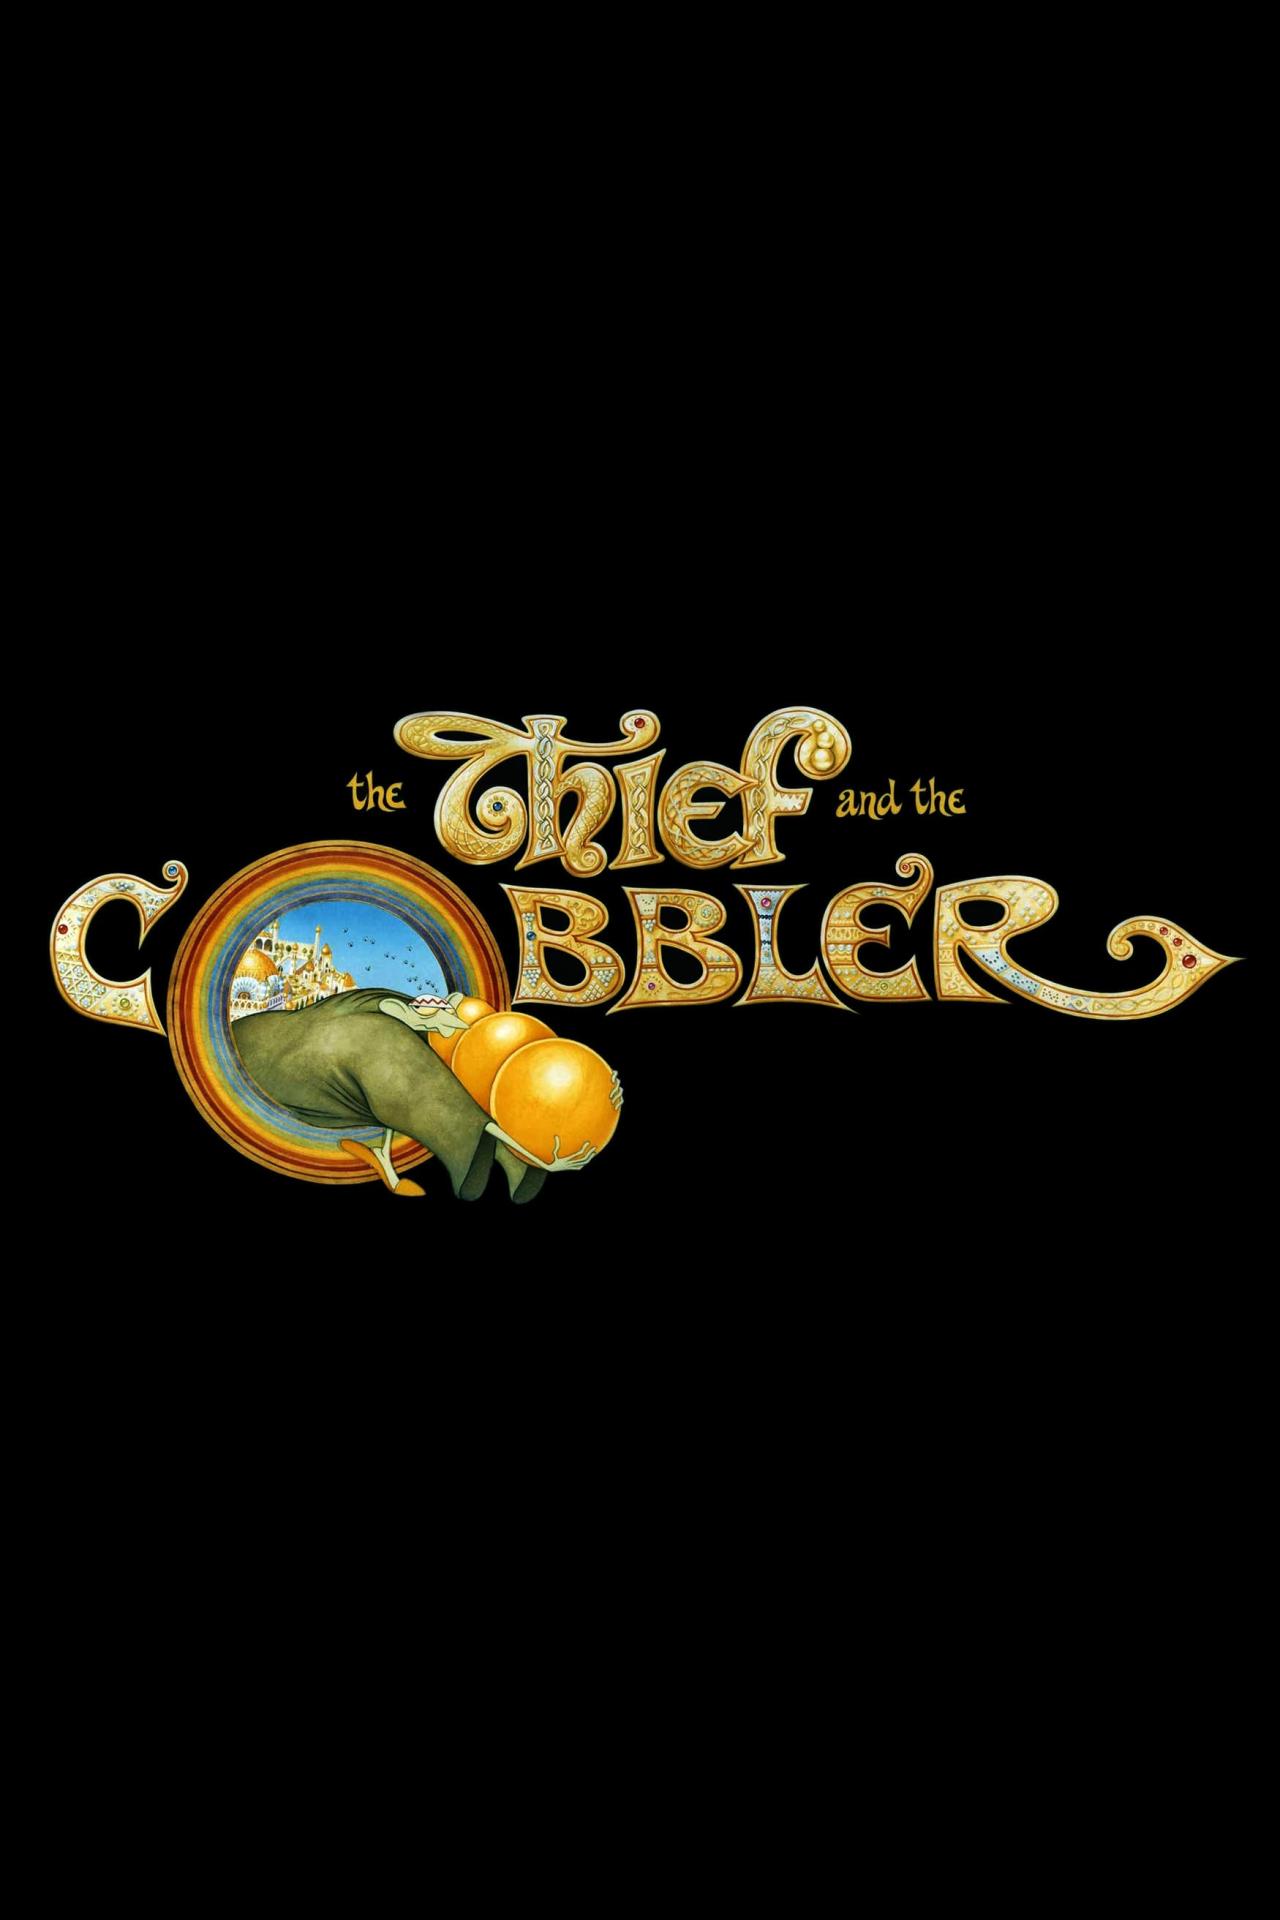 The Thief and the Cobbler est-il disponible sur Netflix ou autre ?